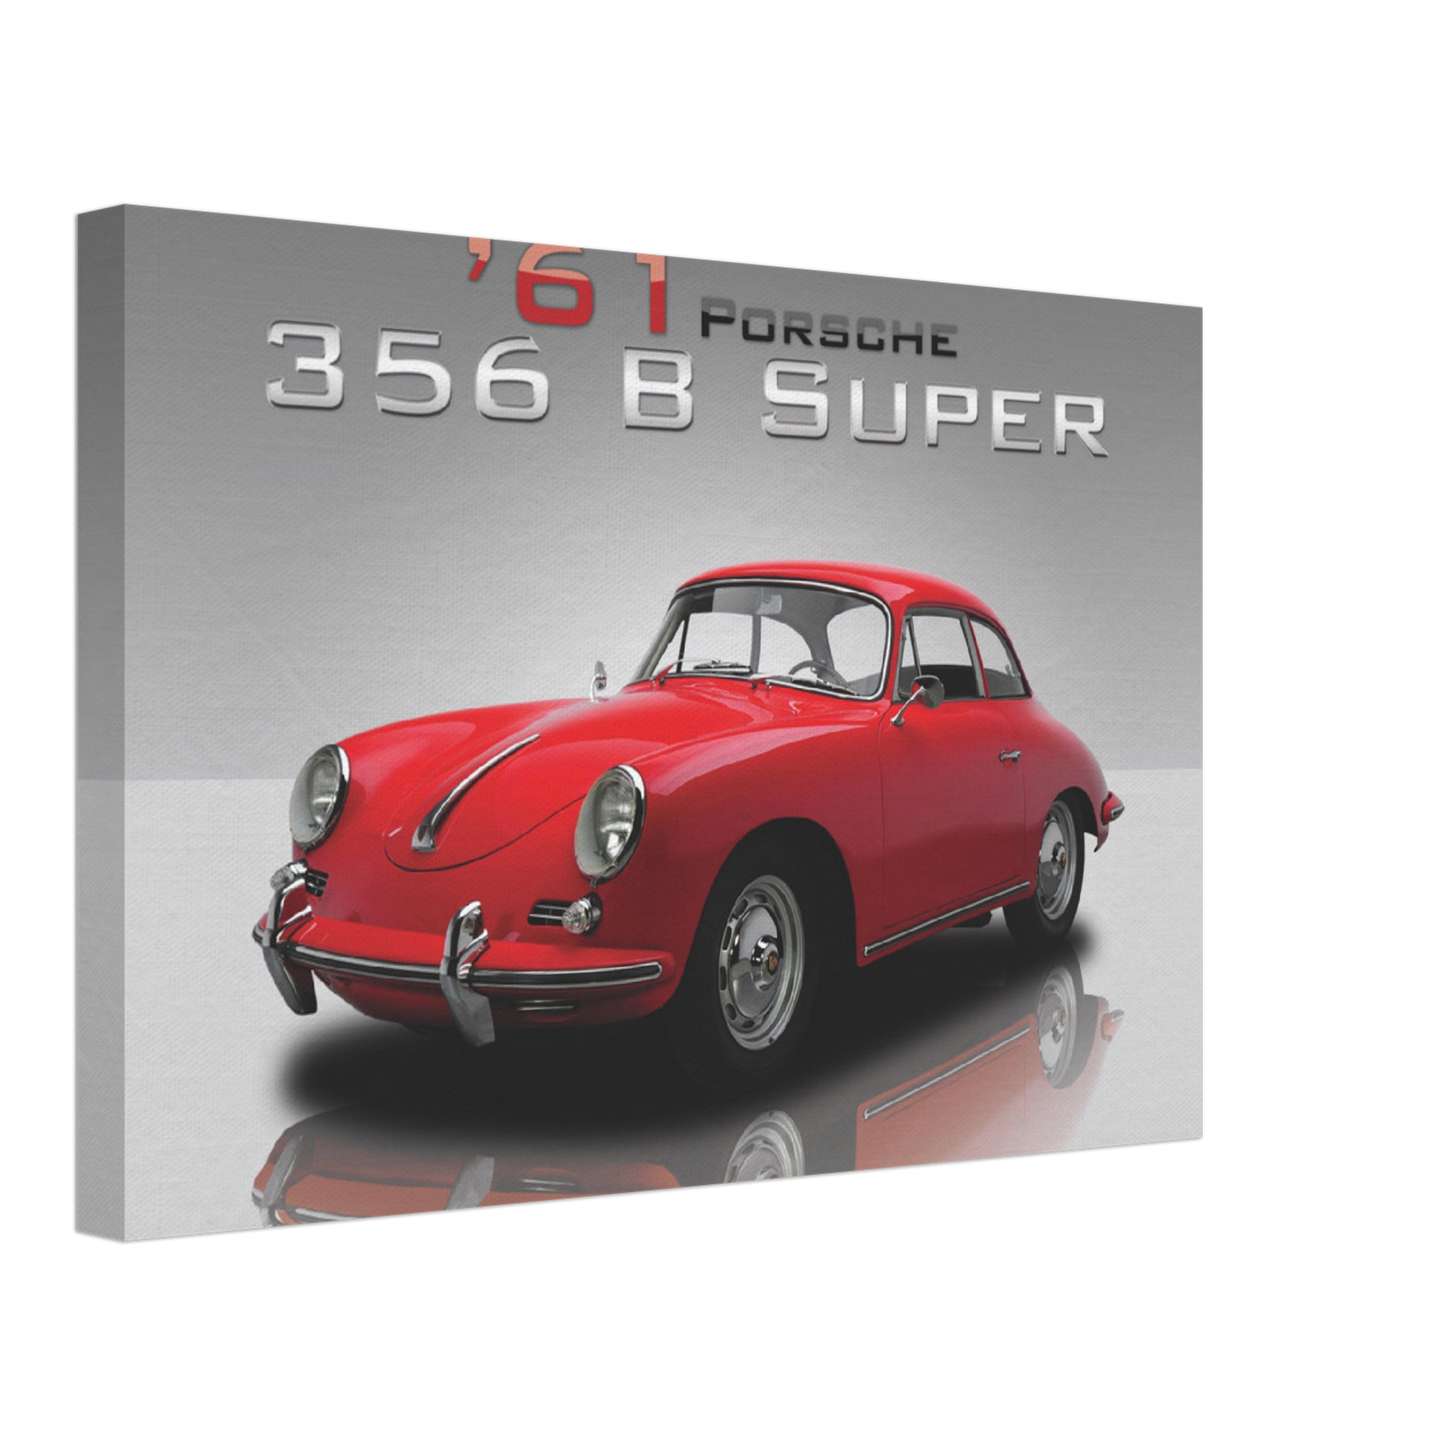 1961 Porsche 356 B Super